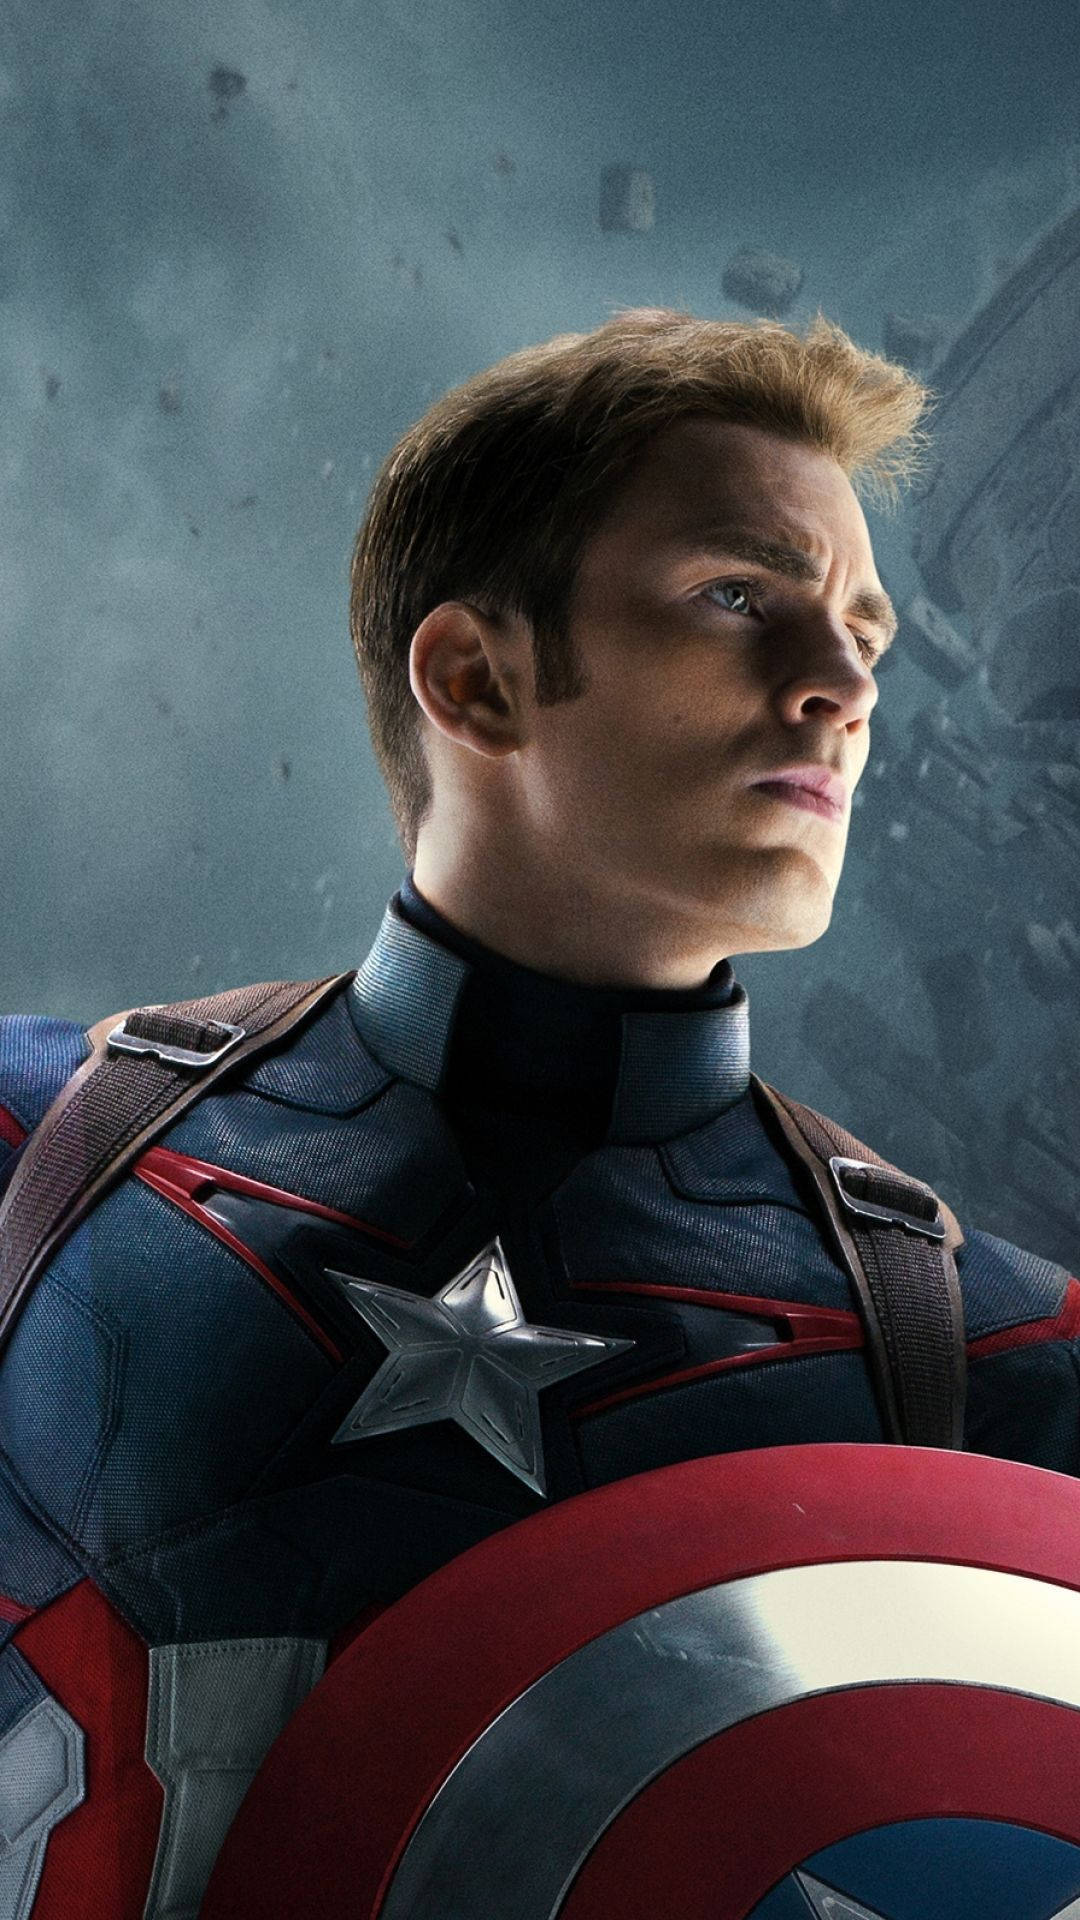 Inspirierendjenseits Aller Vorstellung: Captain America! Wallpaper